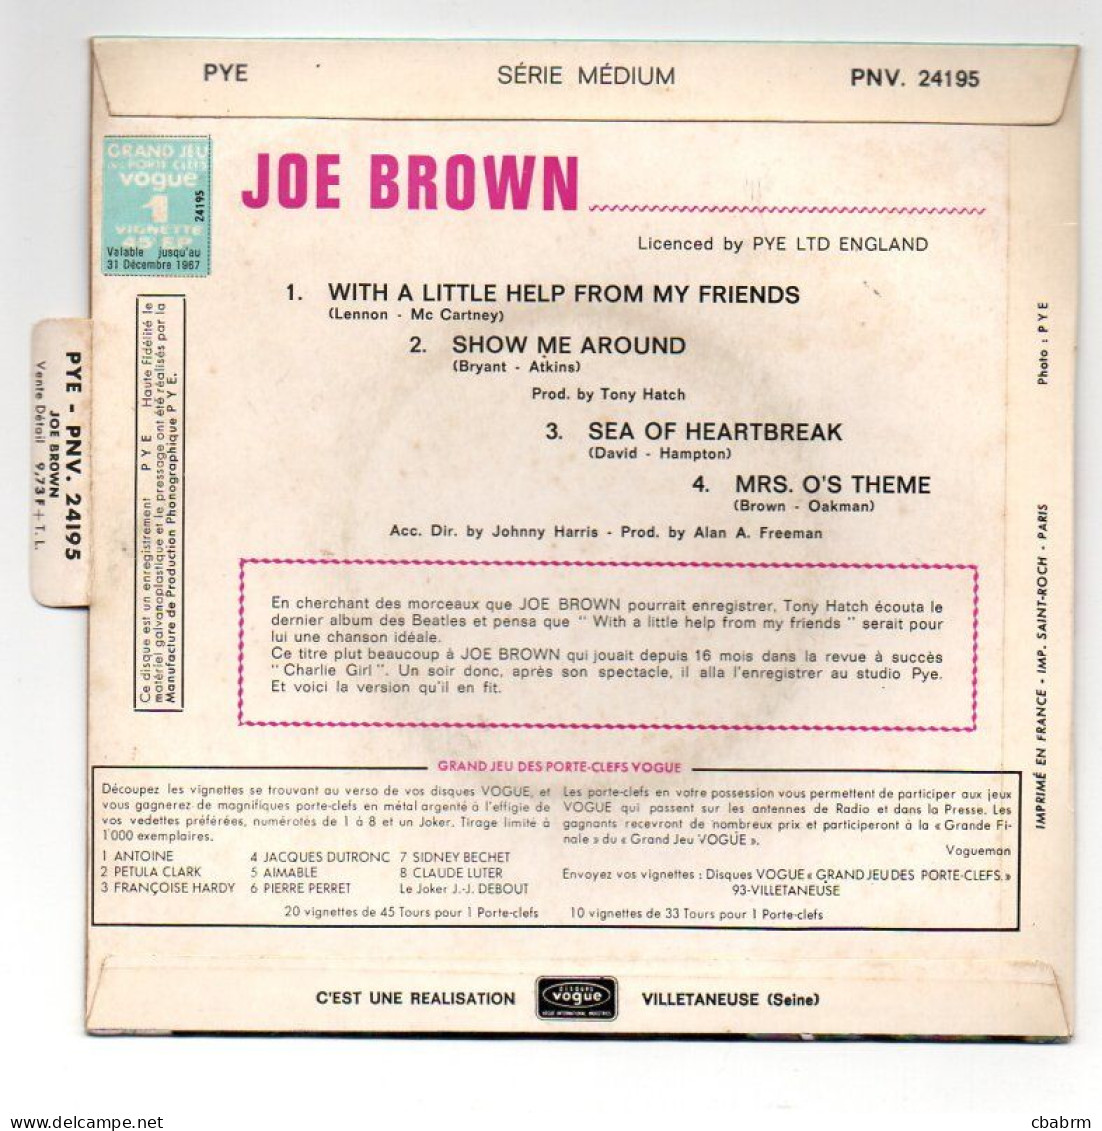 EP 45 TOURS JOE BROWN MRS O'S THEME 1967 FRANCE PYE PNV 24195 AVEC LANGUETTE - 7" - Rock